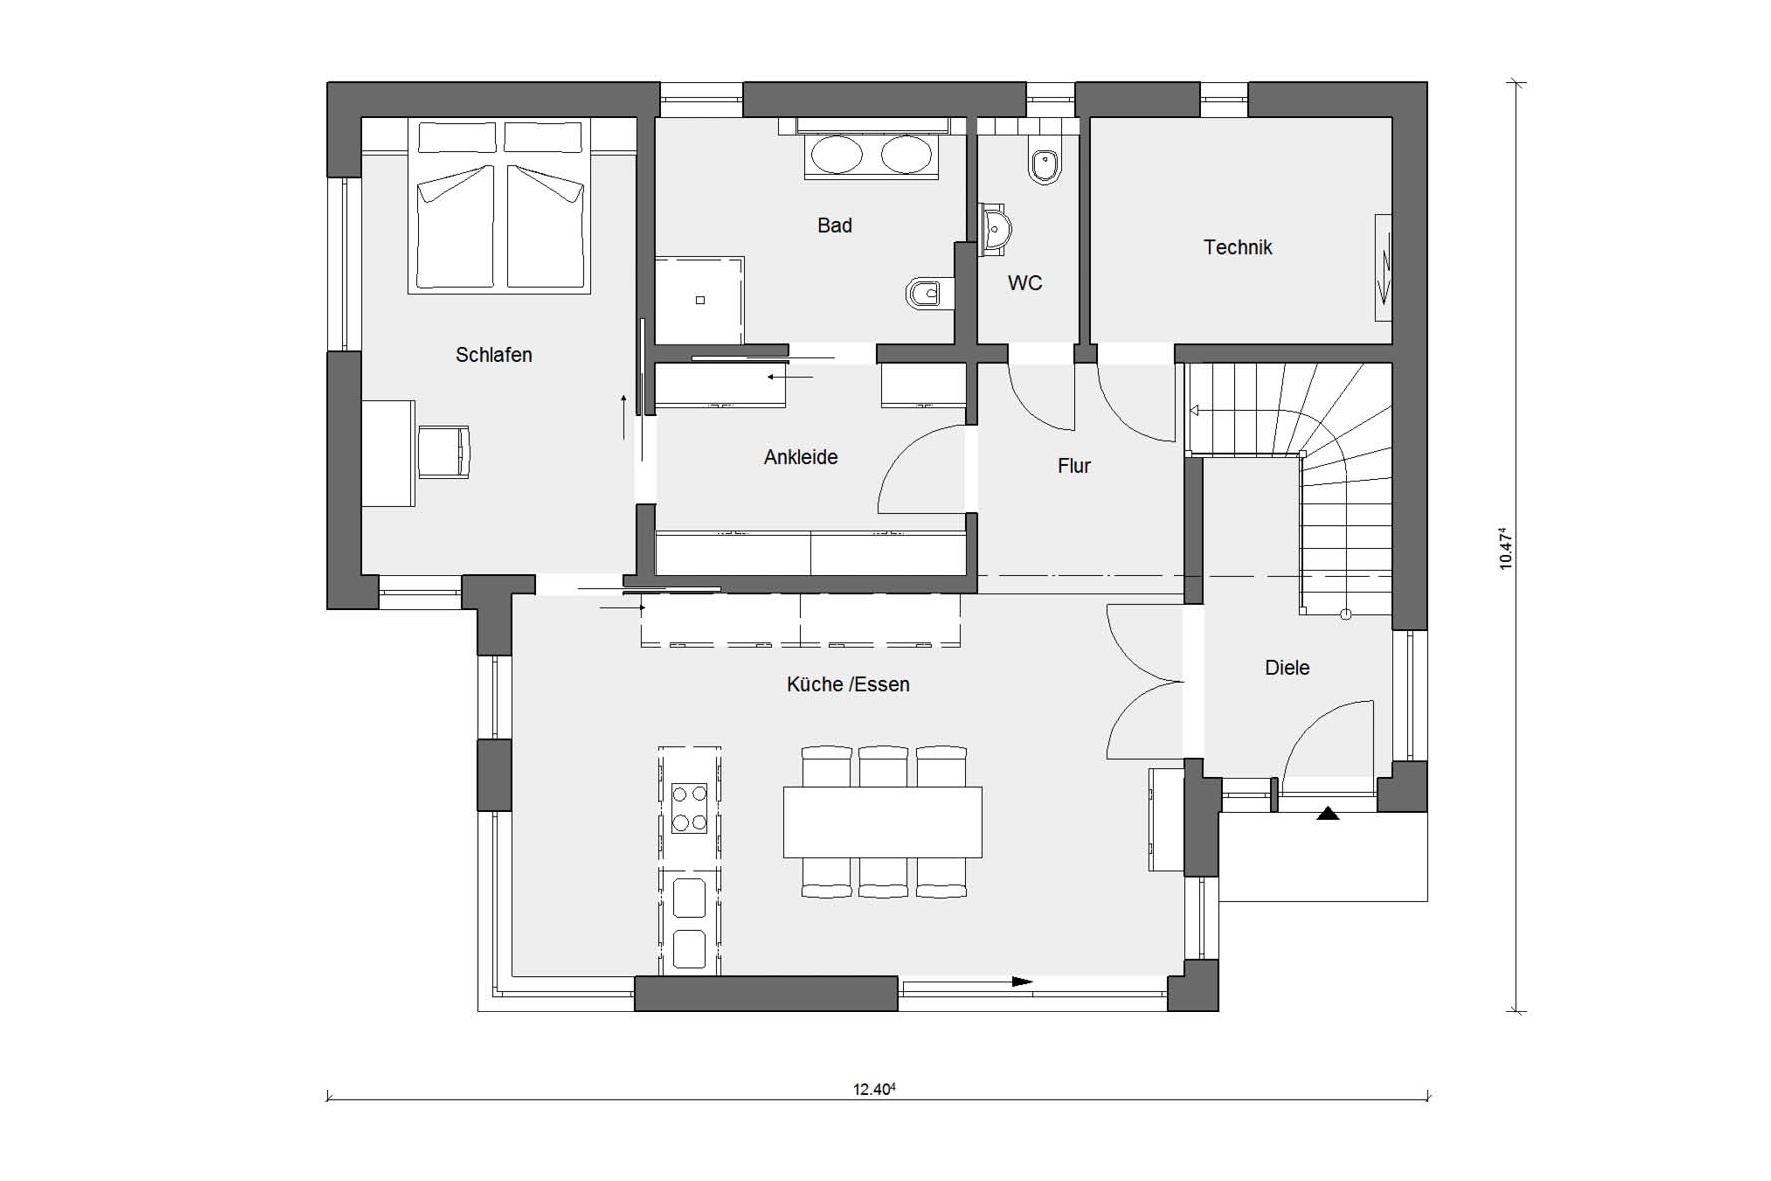 Floor plan on the ground floor of Kubushaus E 20-191.1